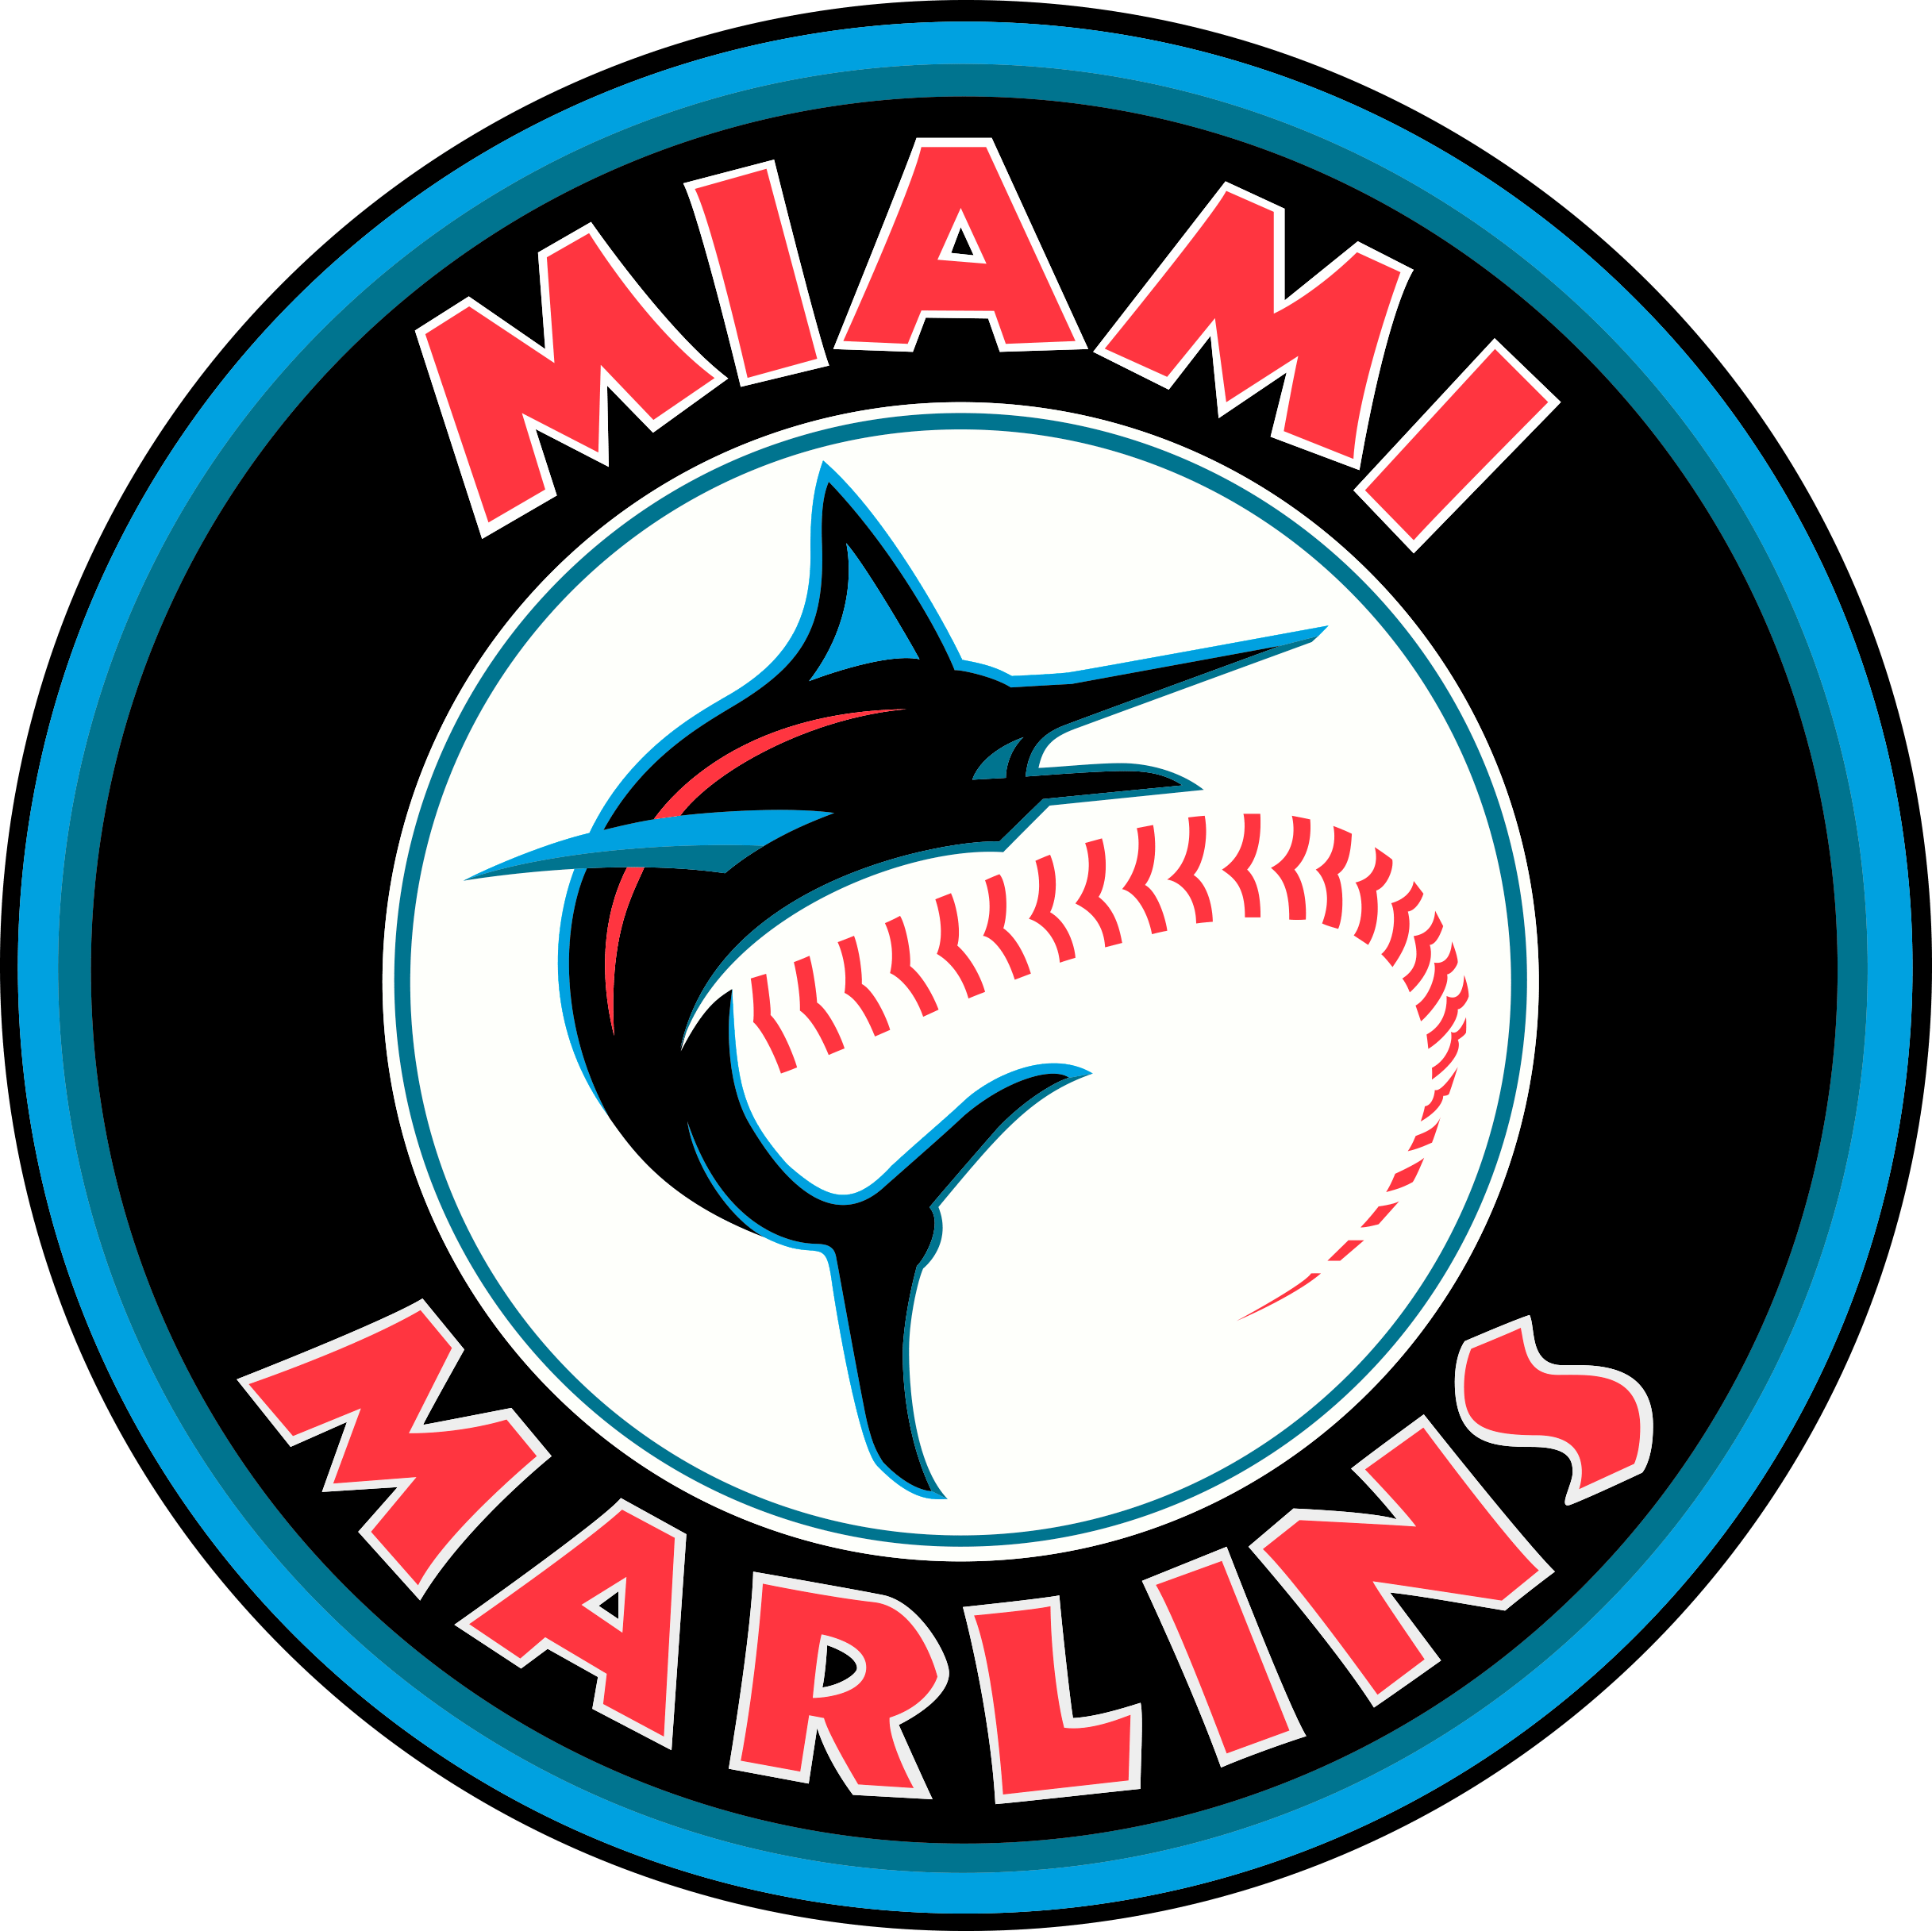 MIAMI MARLINS MLB BUNDLE LOGO SVG, PNG, DXF - Movie Design Bundles